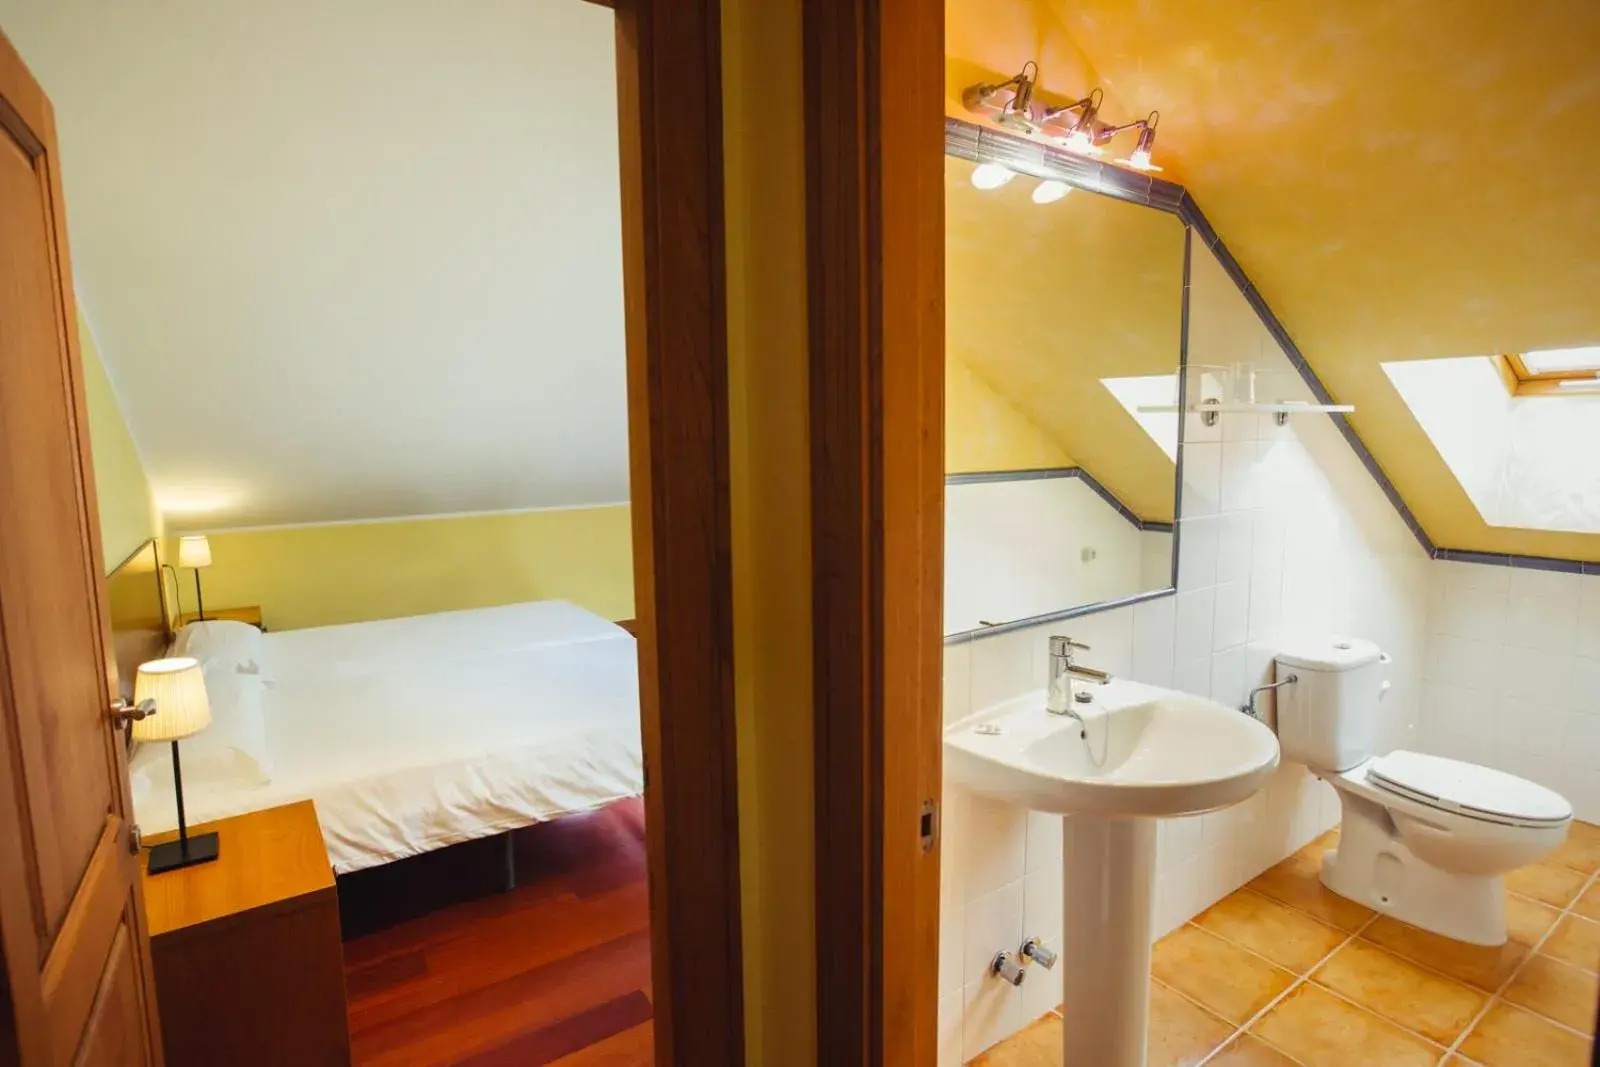 Photo of the whole room, Bathroom in Hotel El Sella